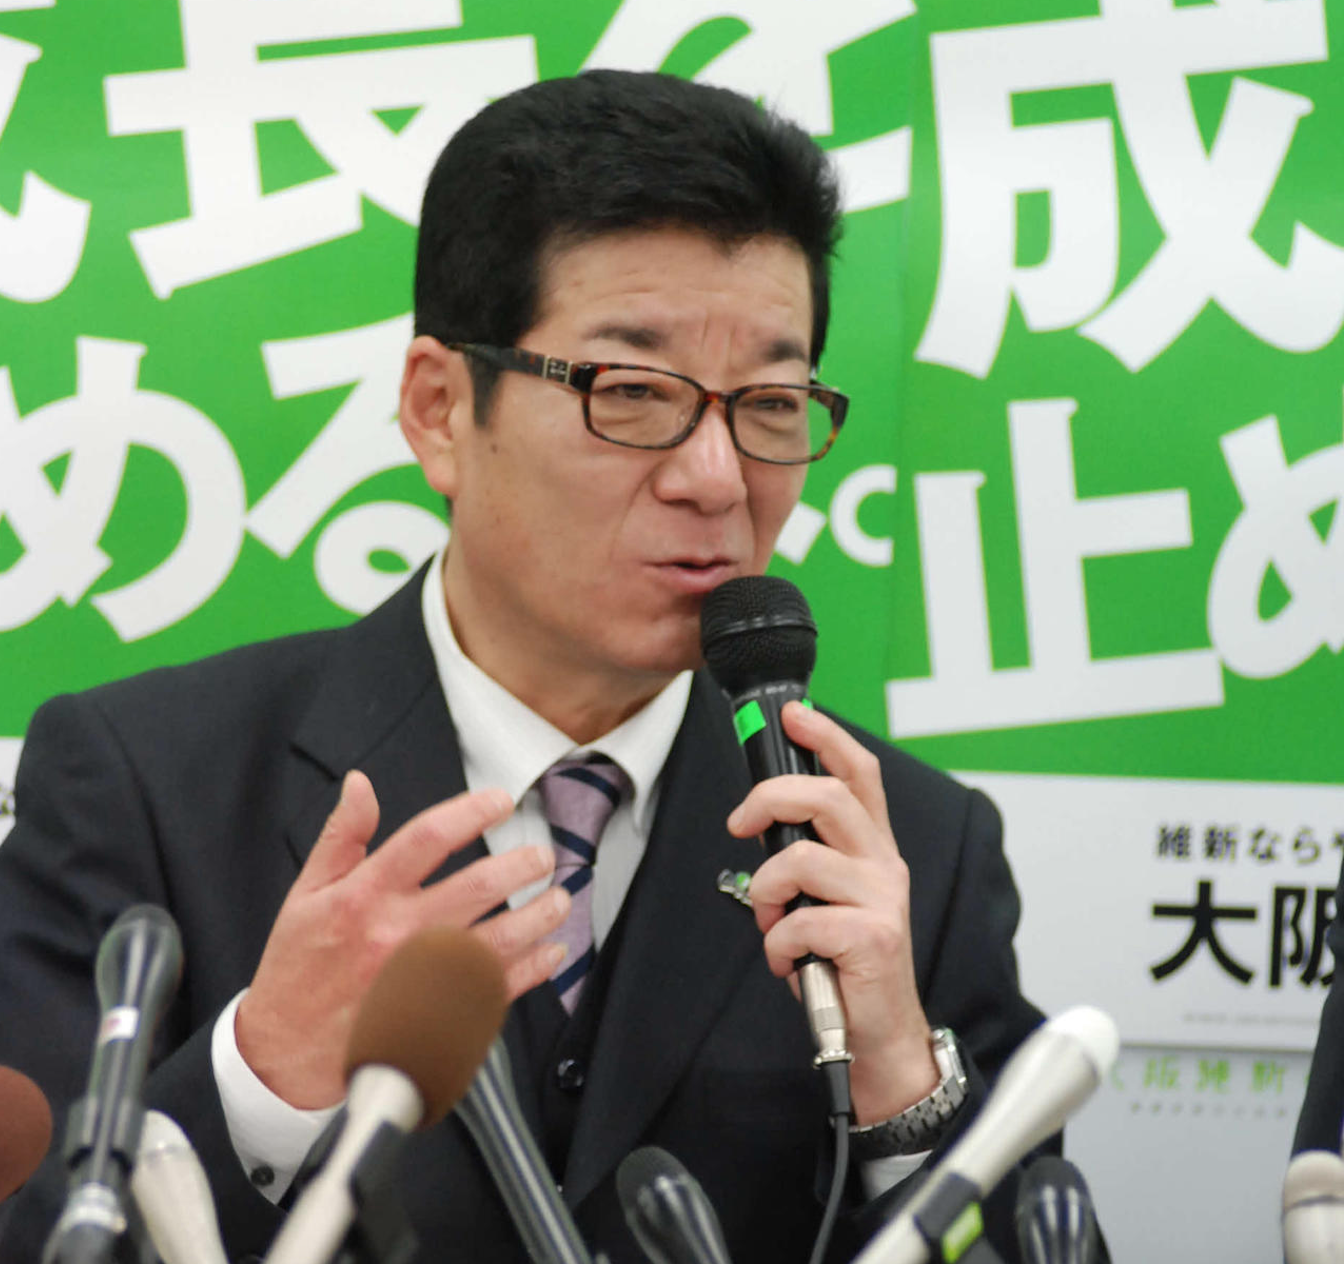 大阪市長・松井一郎はコロナが嘘だと知っている コロナ禍で優雅に“ホテル”通い